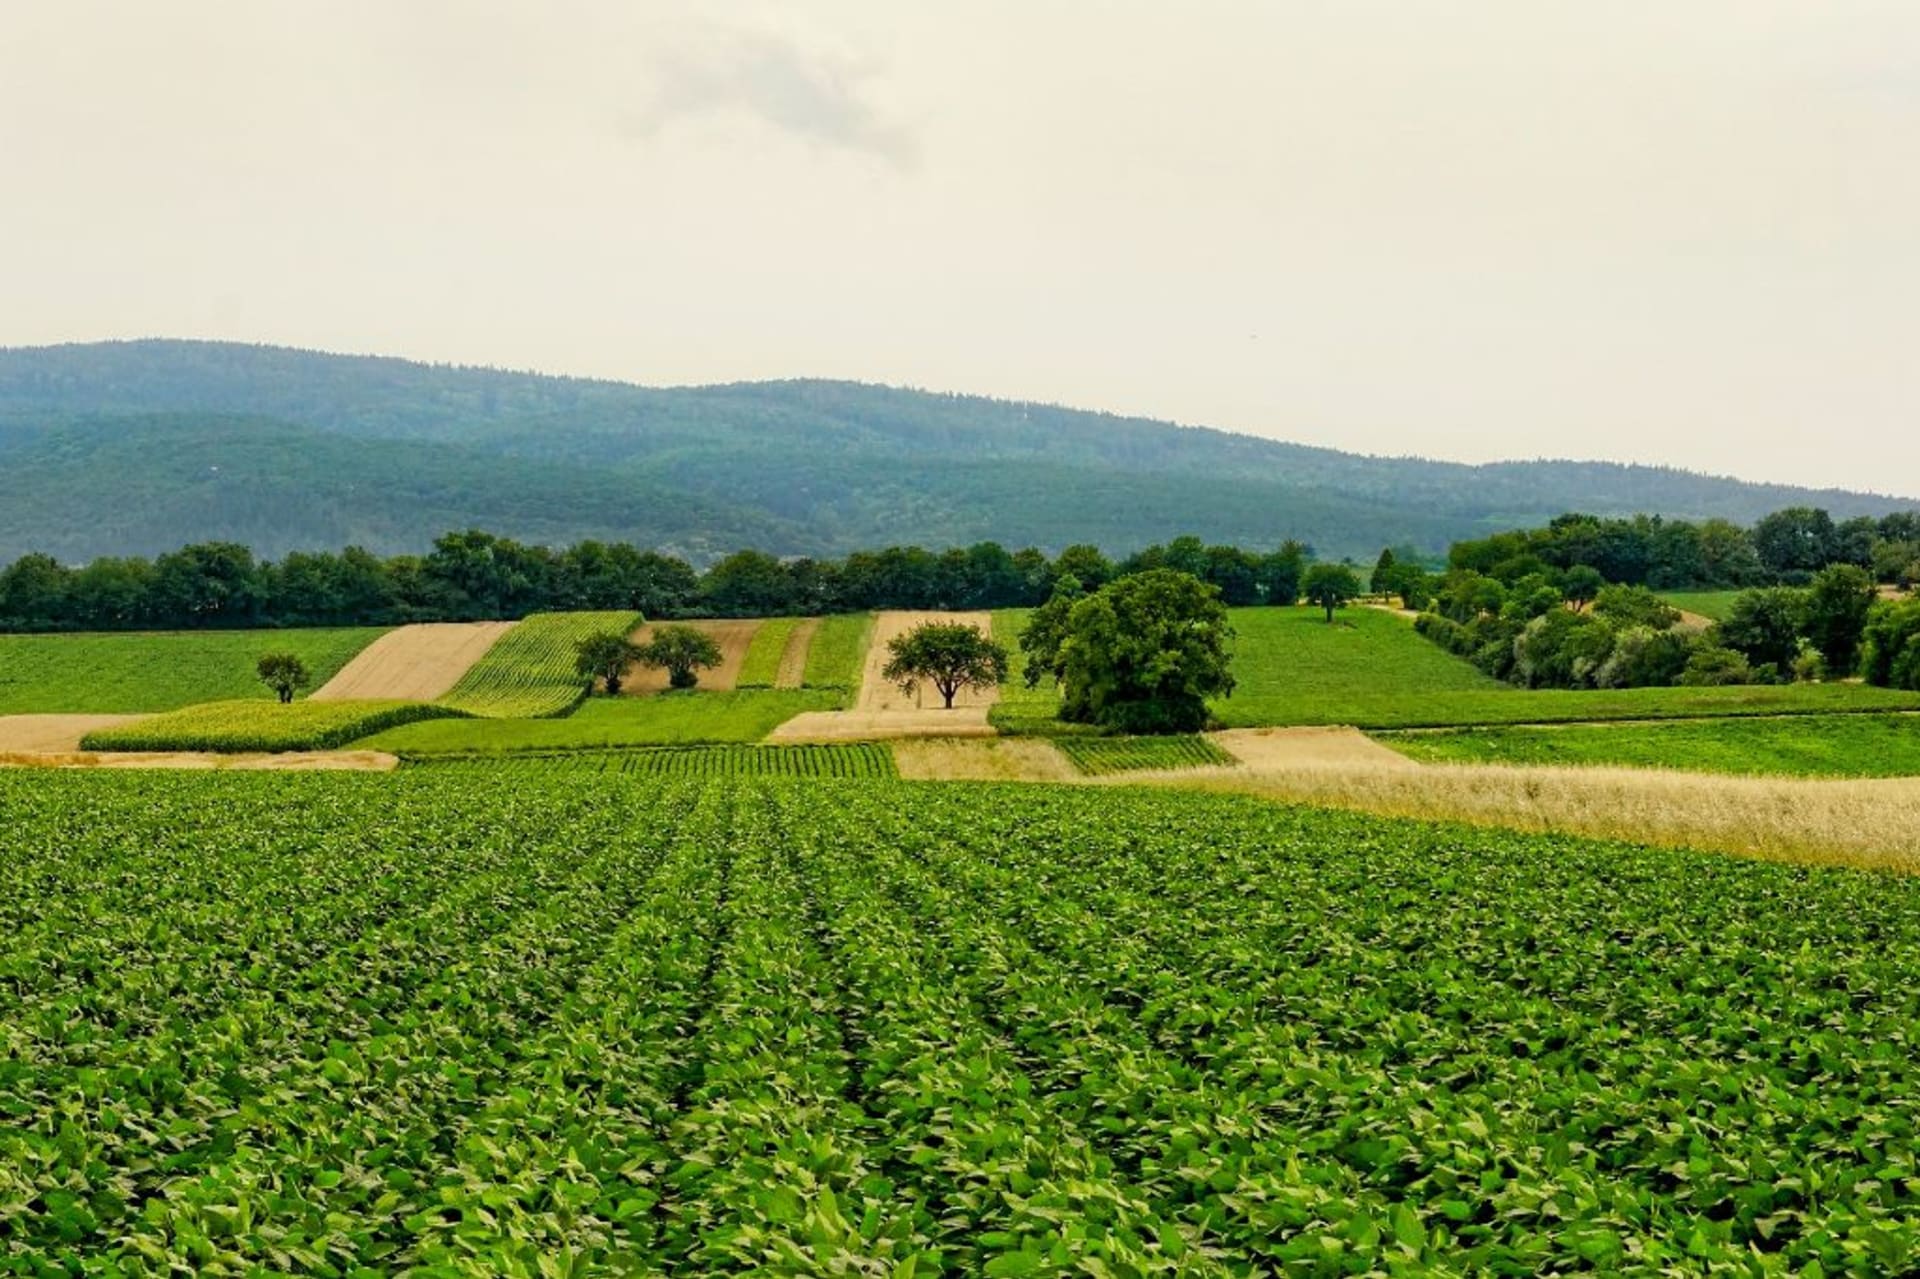 Menší a členitá pole, remízky, meze - to je nedílná součást ekologického zemědělství.